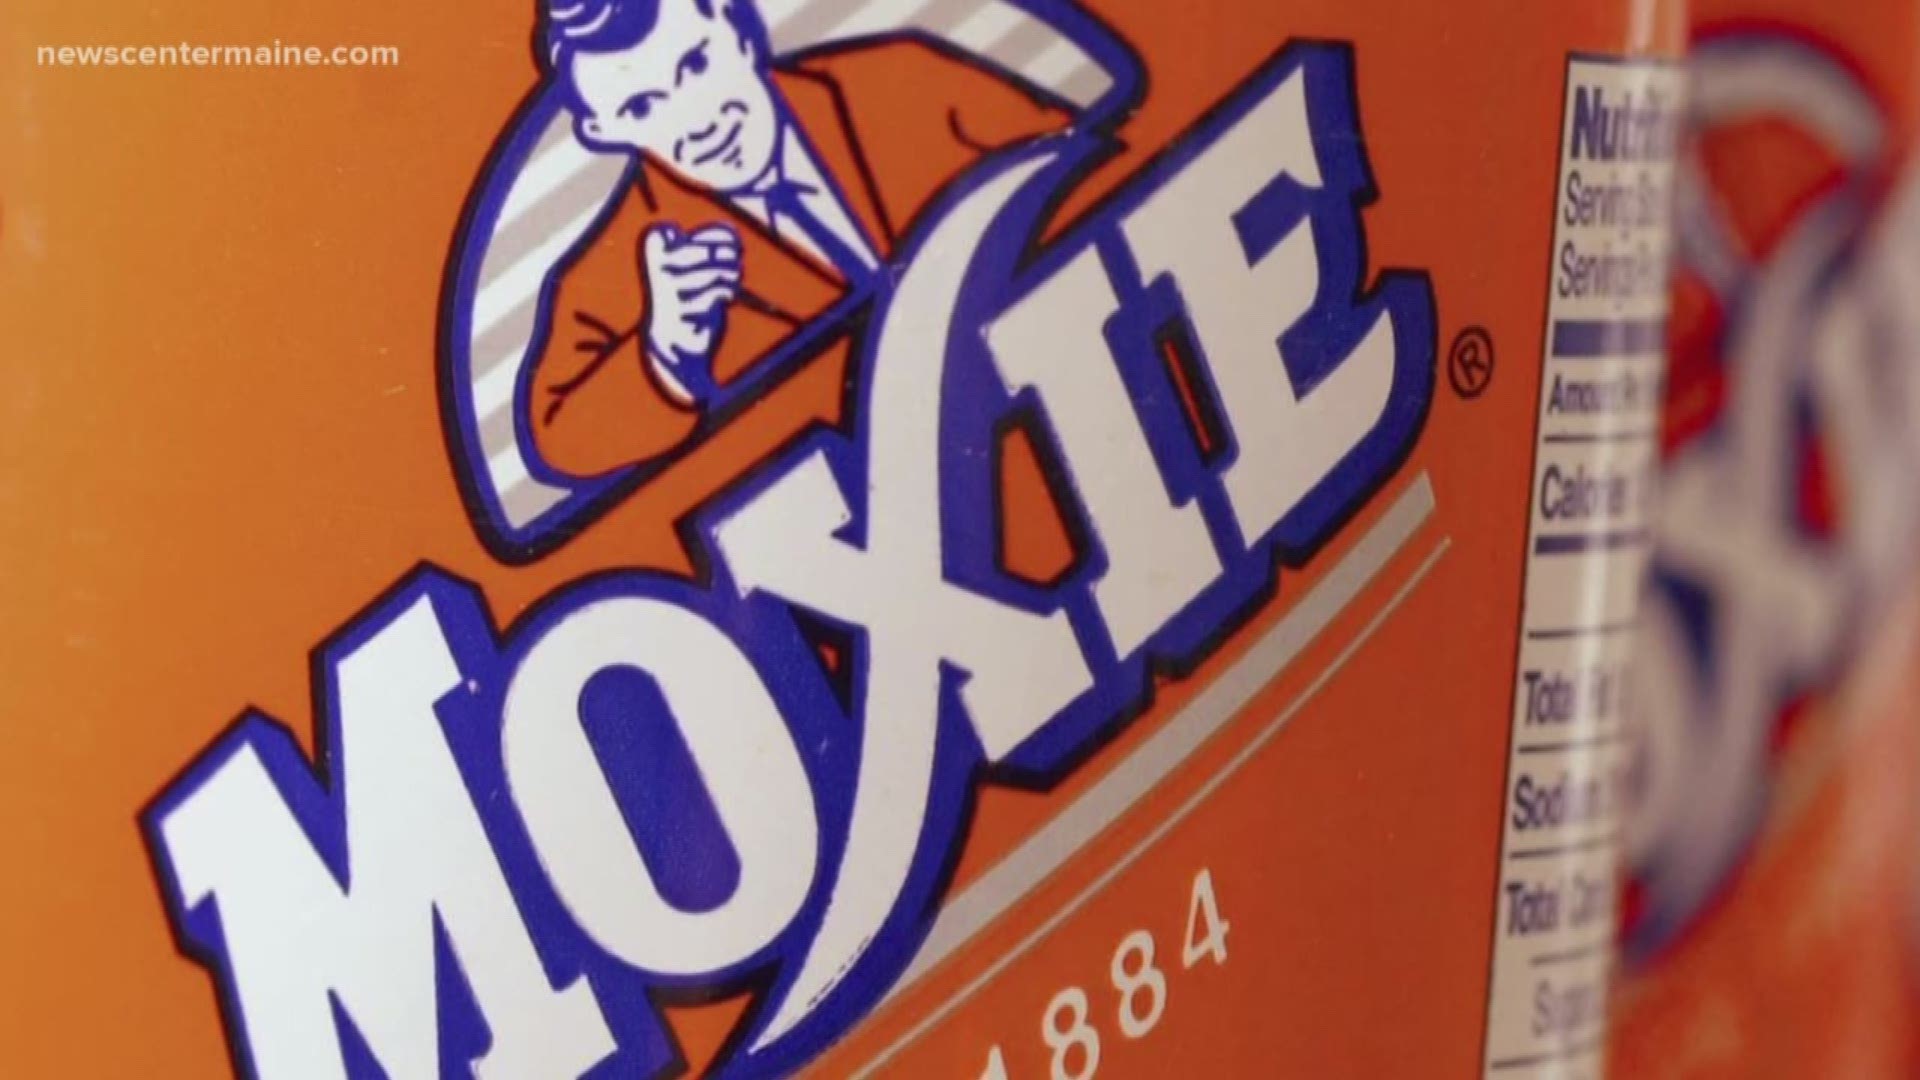 Coca-Cola acquires Moxie